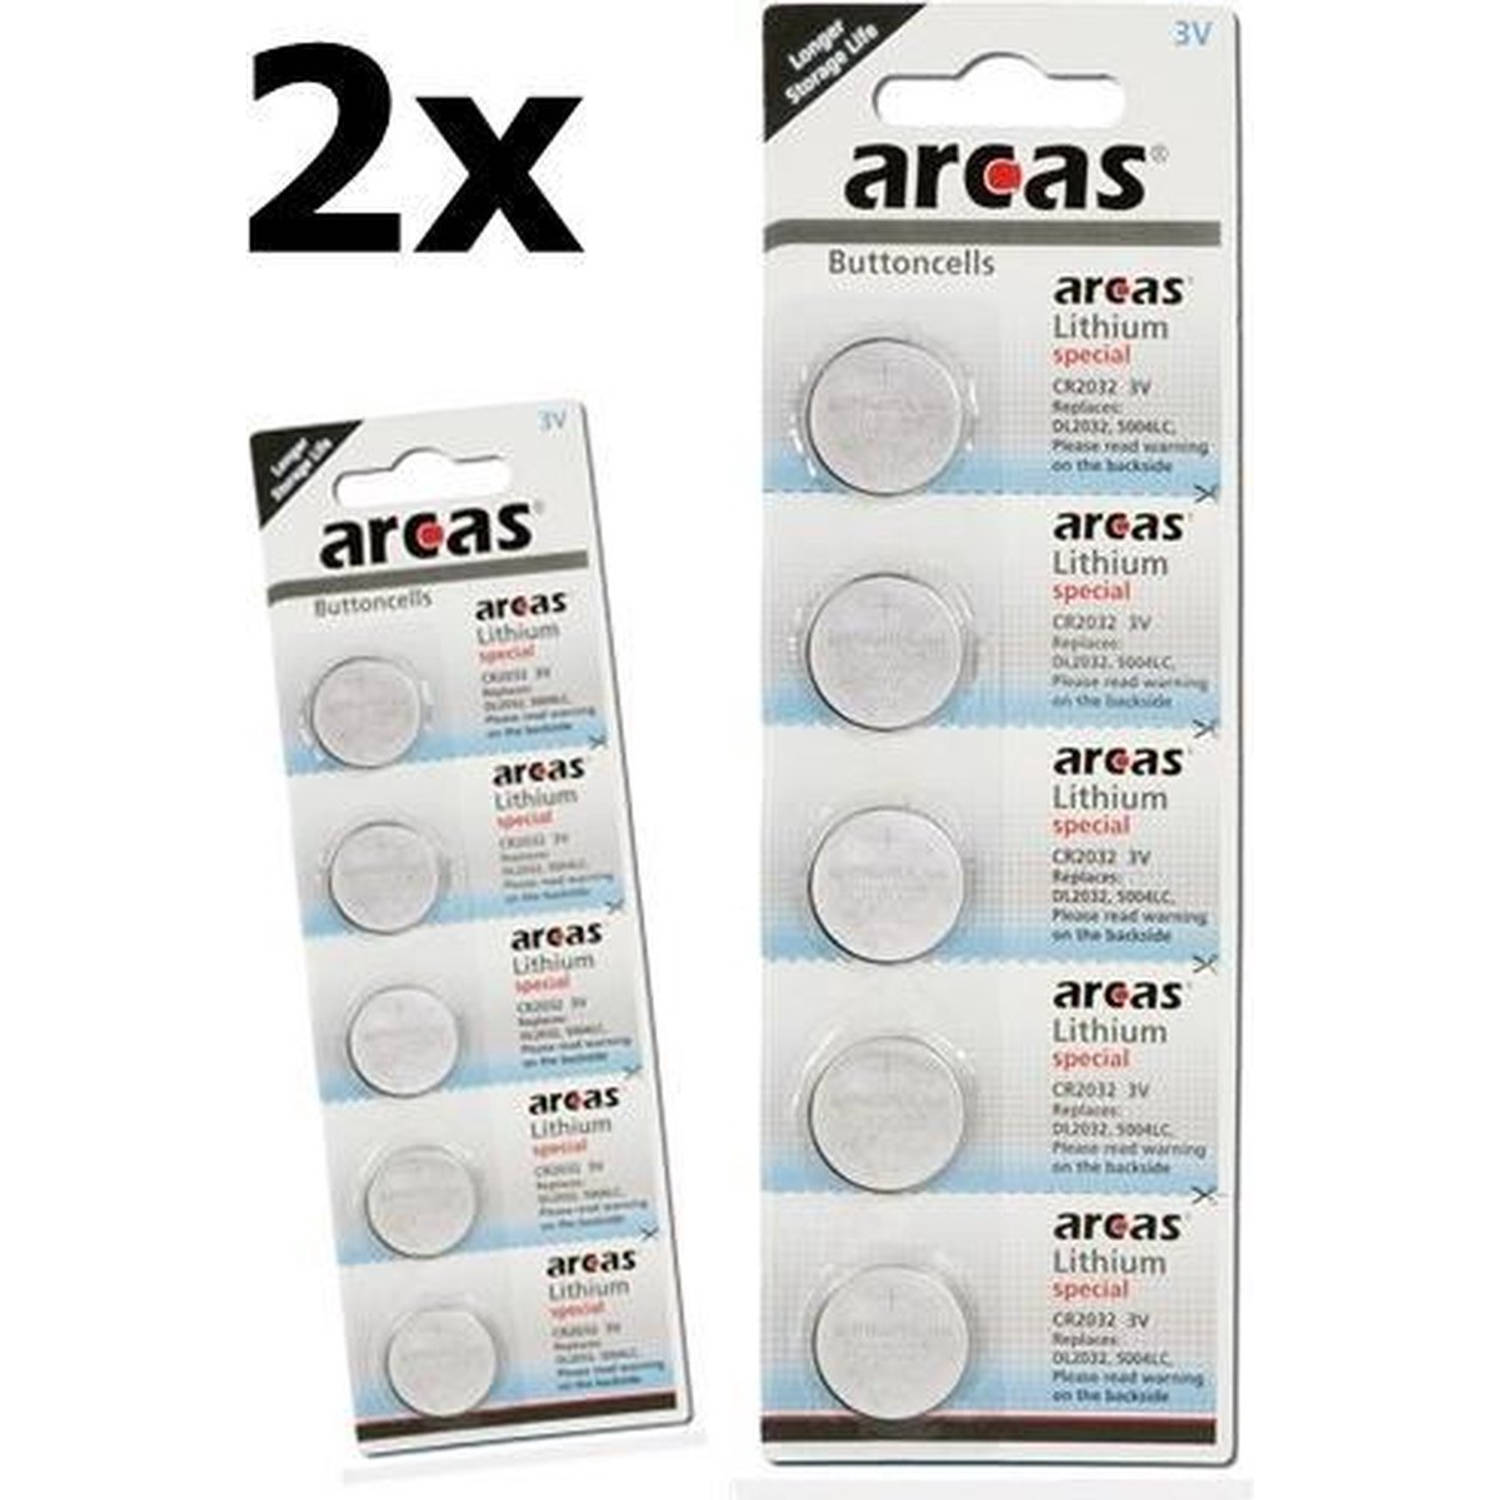 10 Stuks (2 Blisters a 5st) - Arcas CR2032 3V Lithium batterij